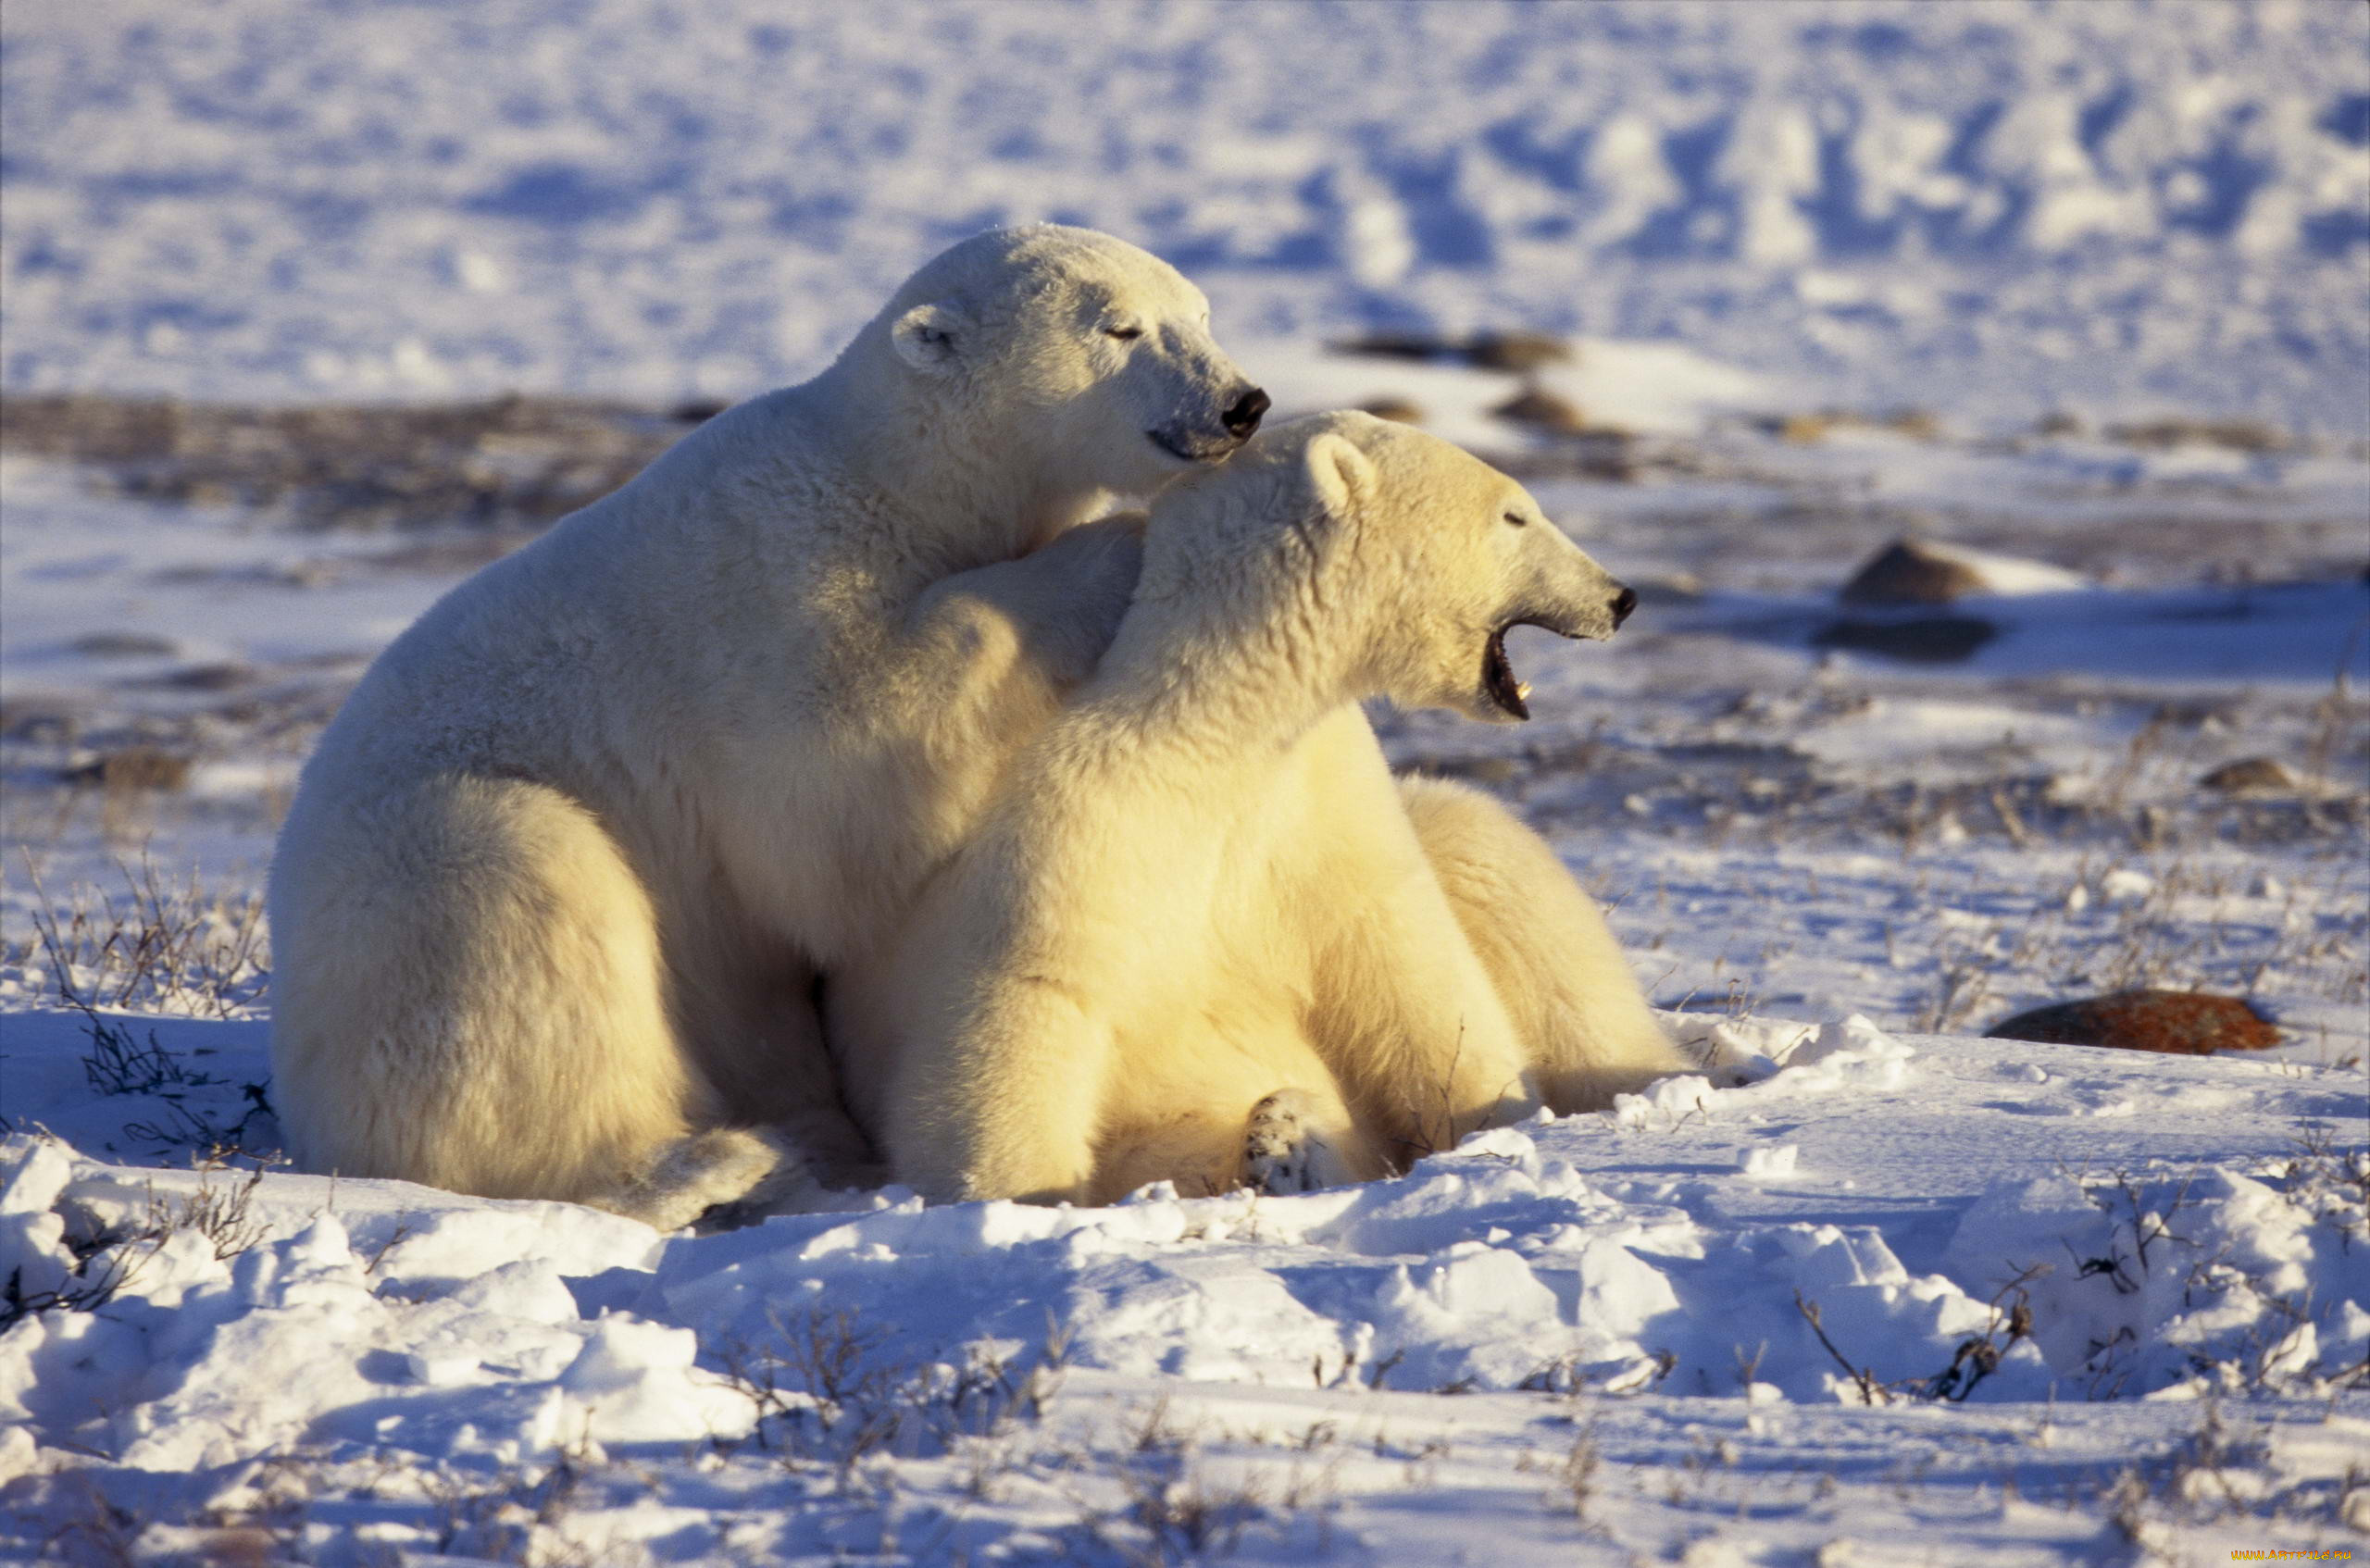 Животные Арктики белый медведь